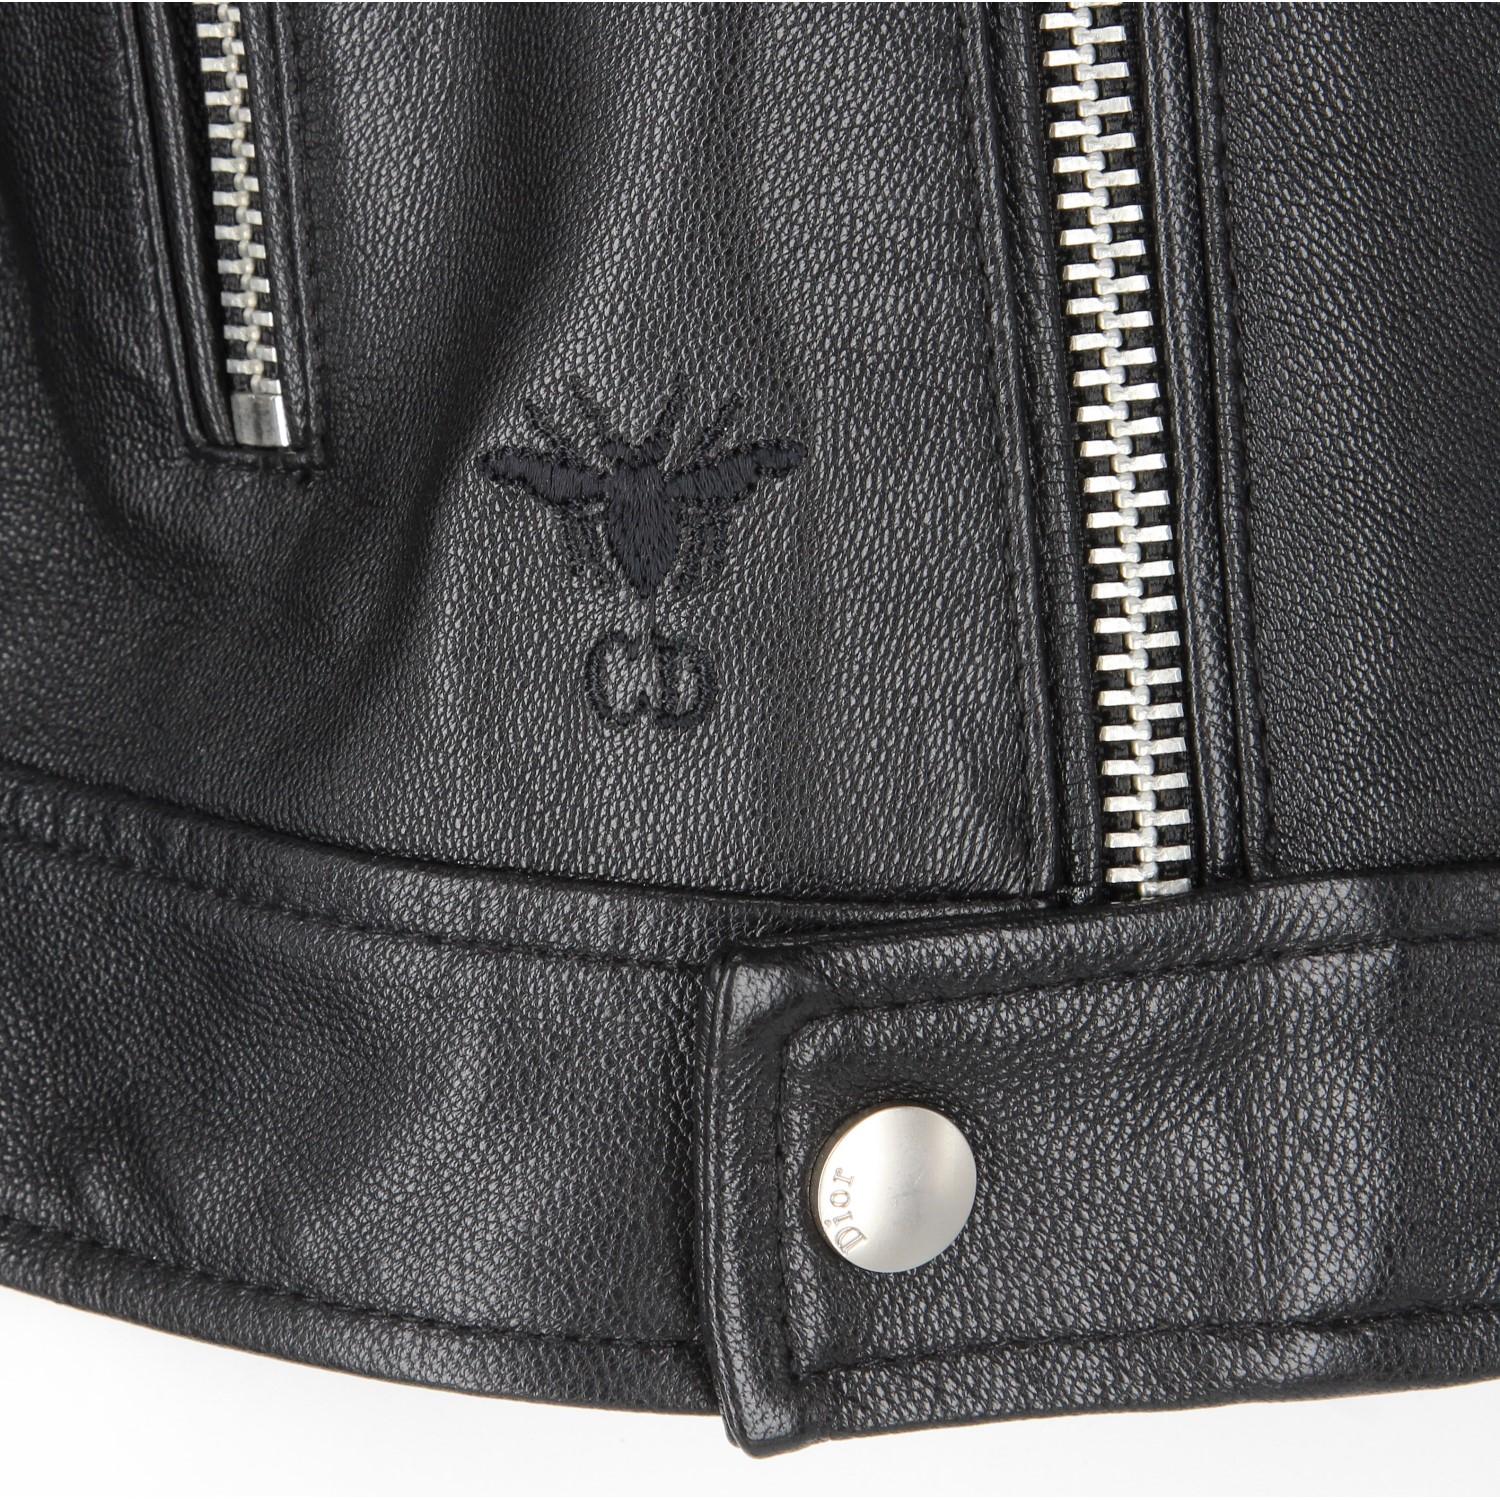 2010s Dior Black Leather Biker Jacket  3